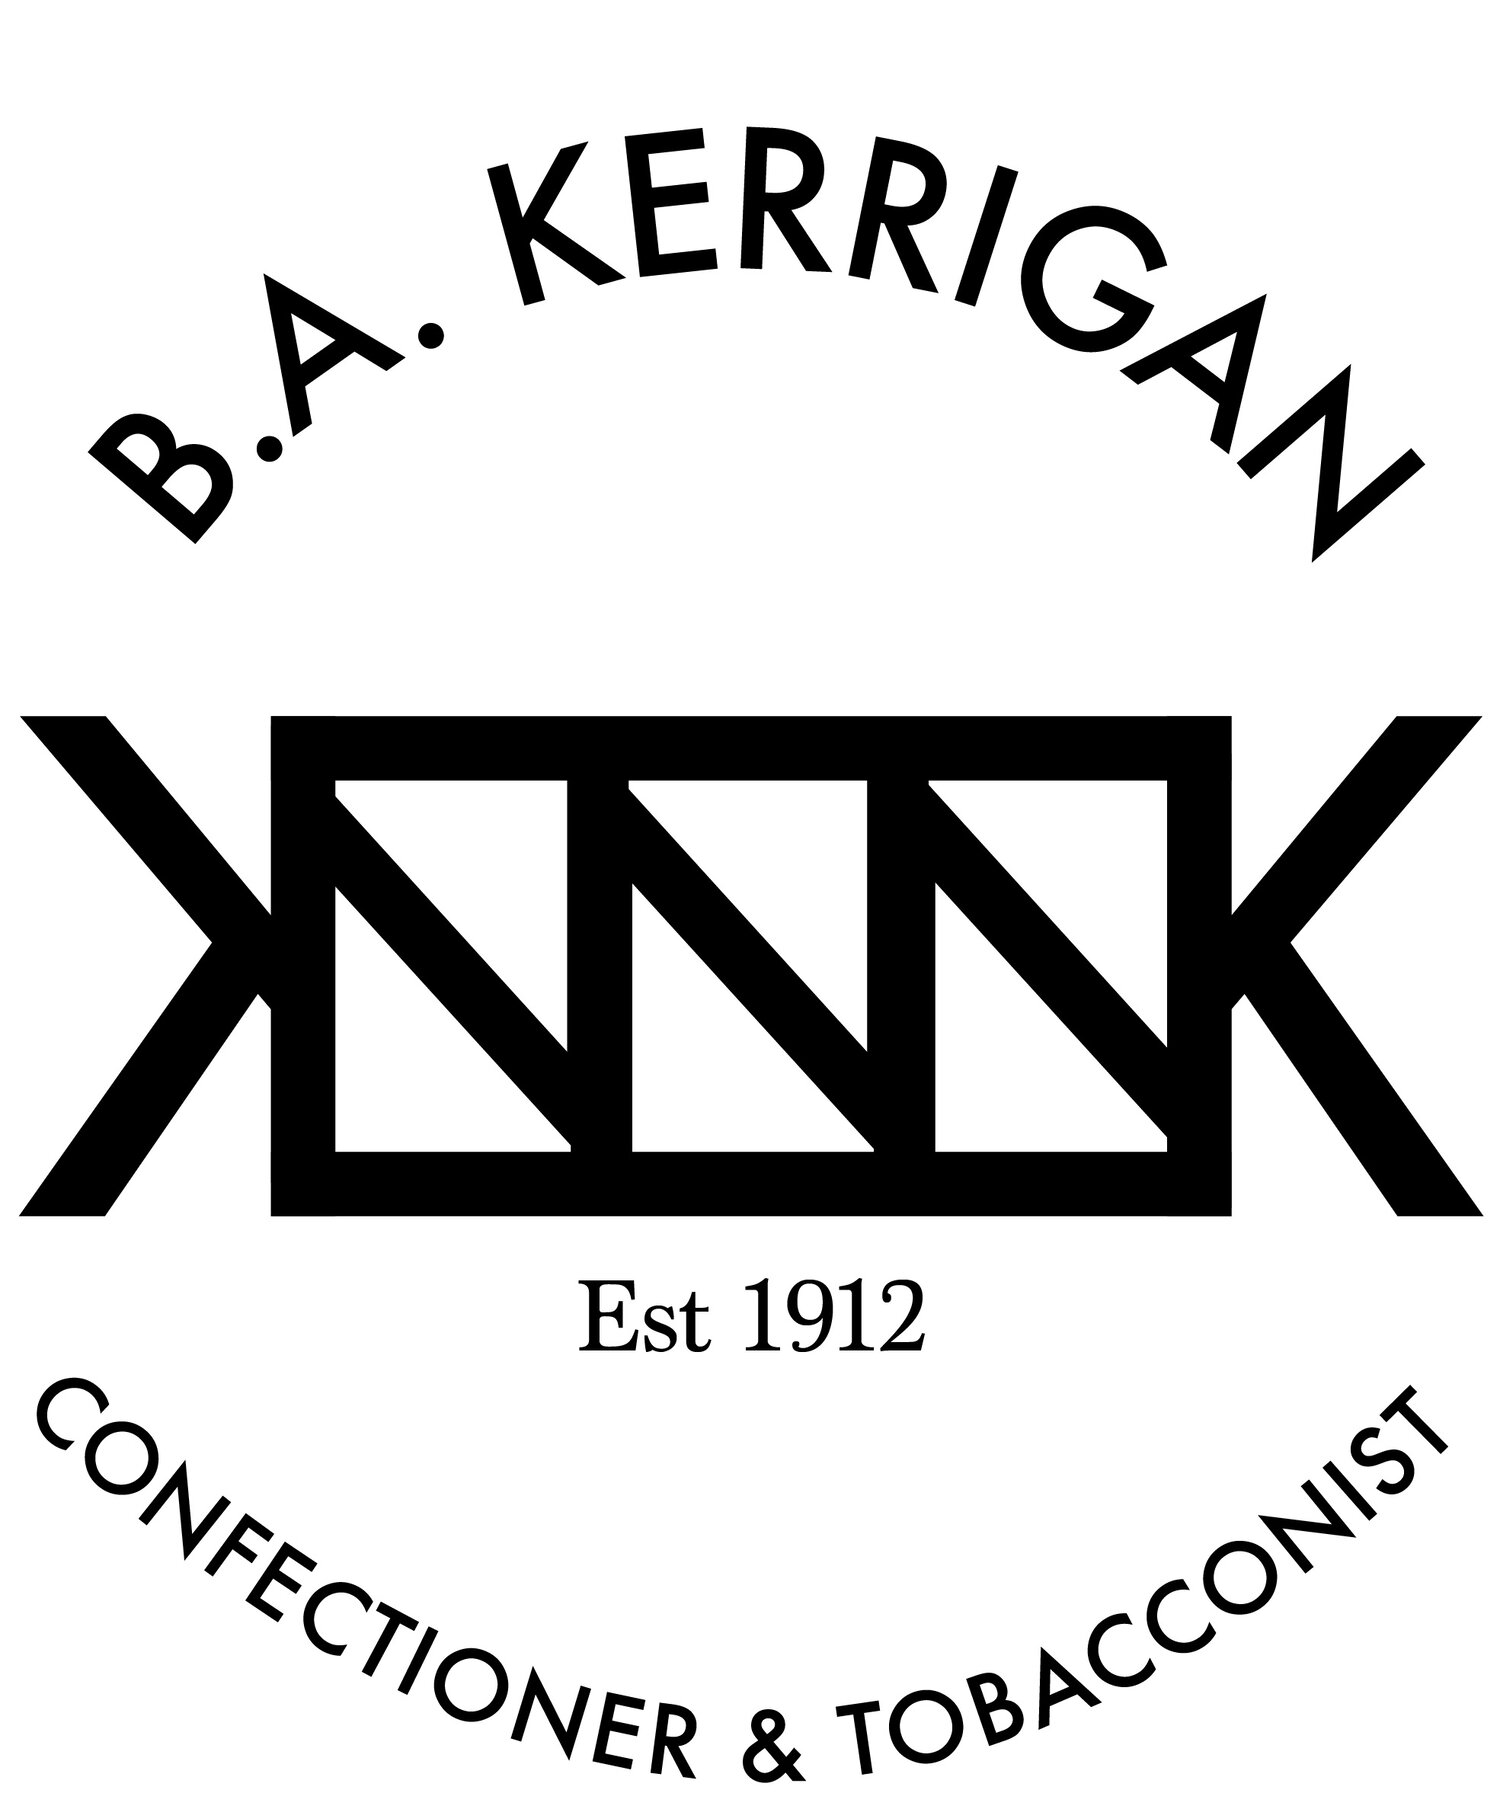 B.A. Kerrigan